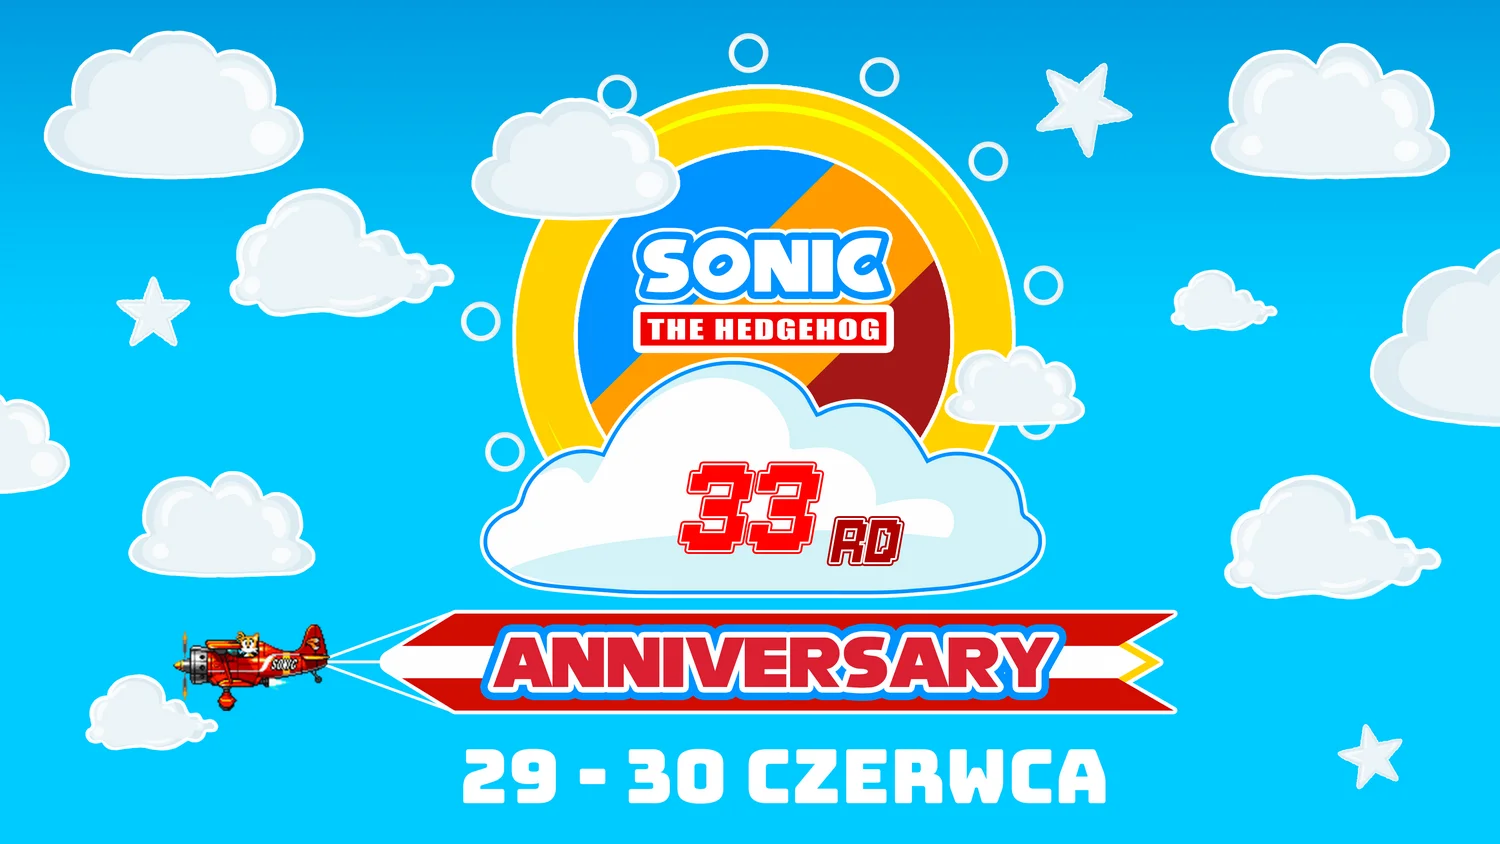 Sonic 33rd Anniversary